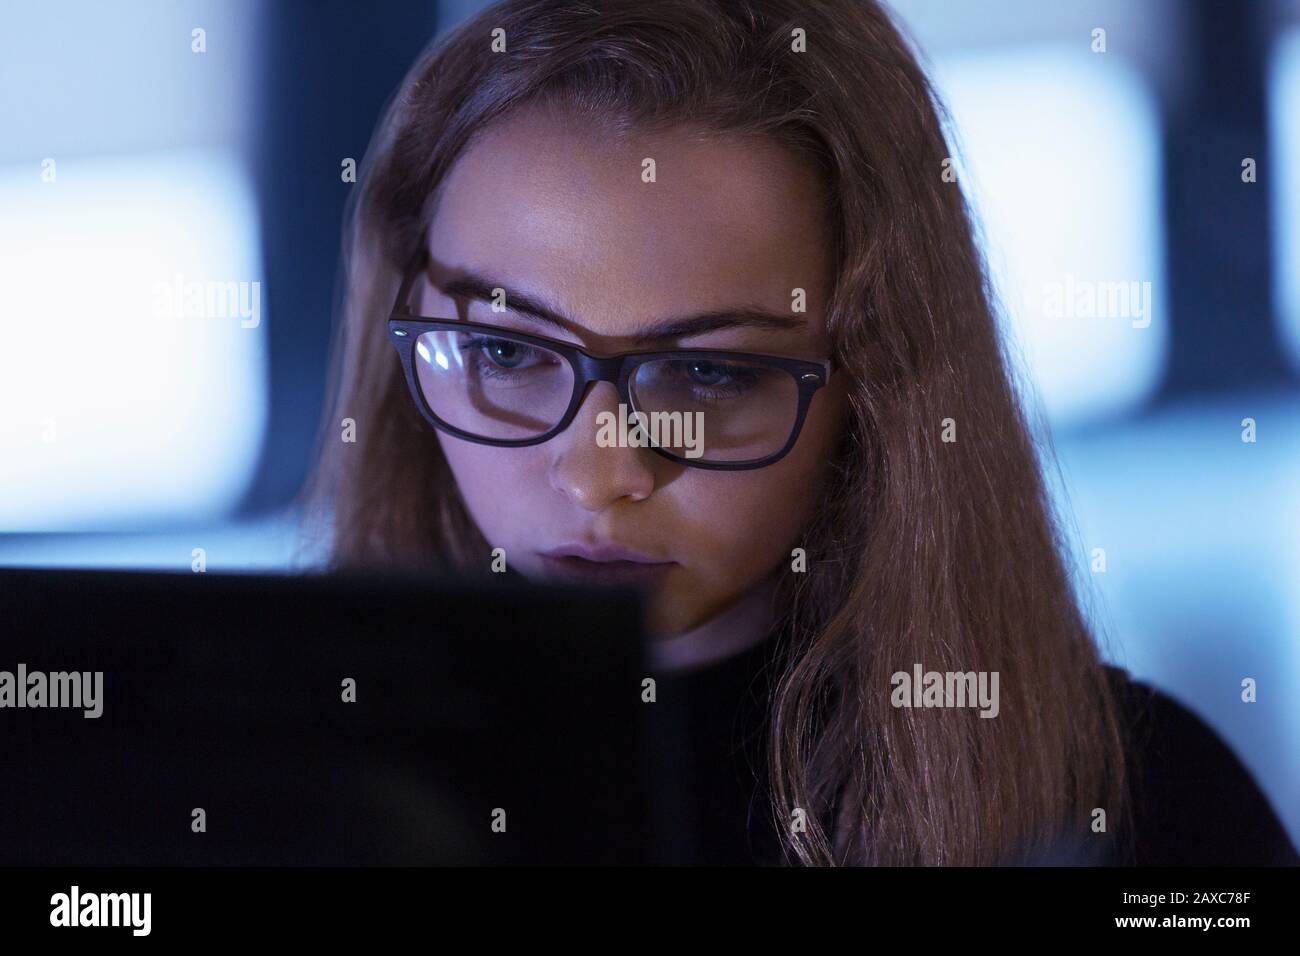 Focused teenage girl in eyeglasses using laptop Stock Photo